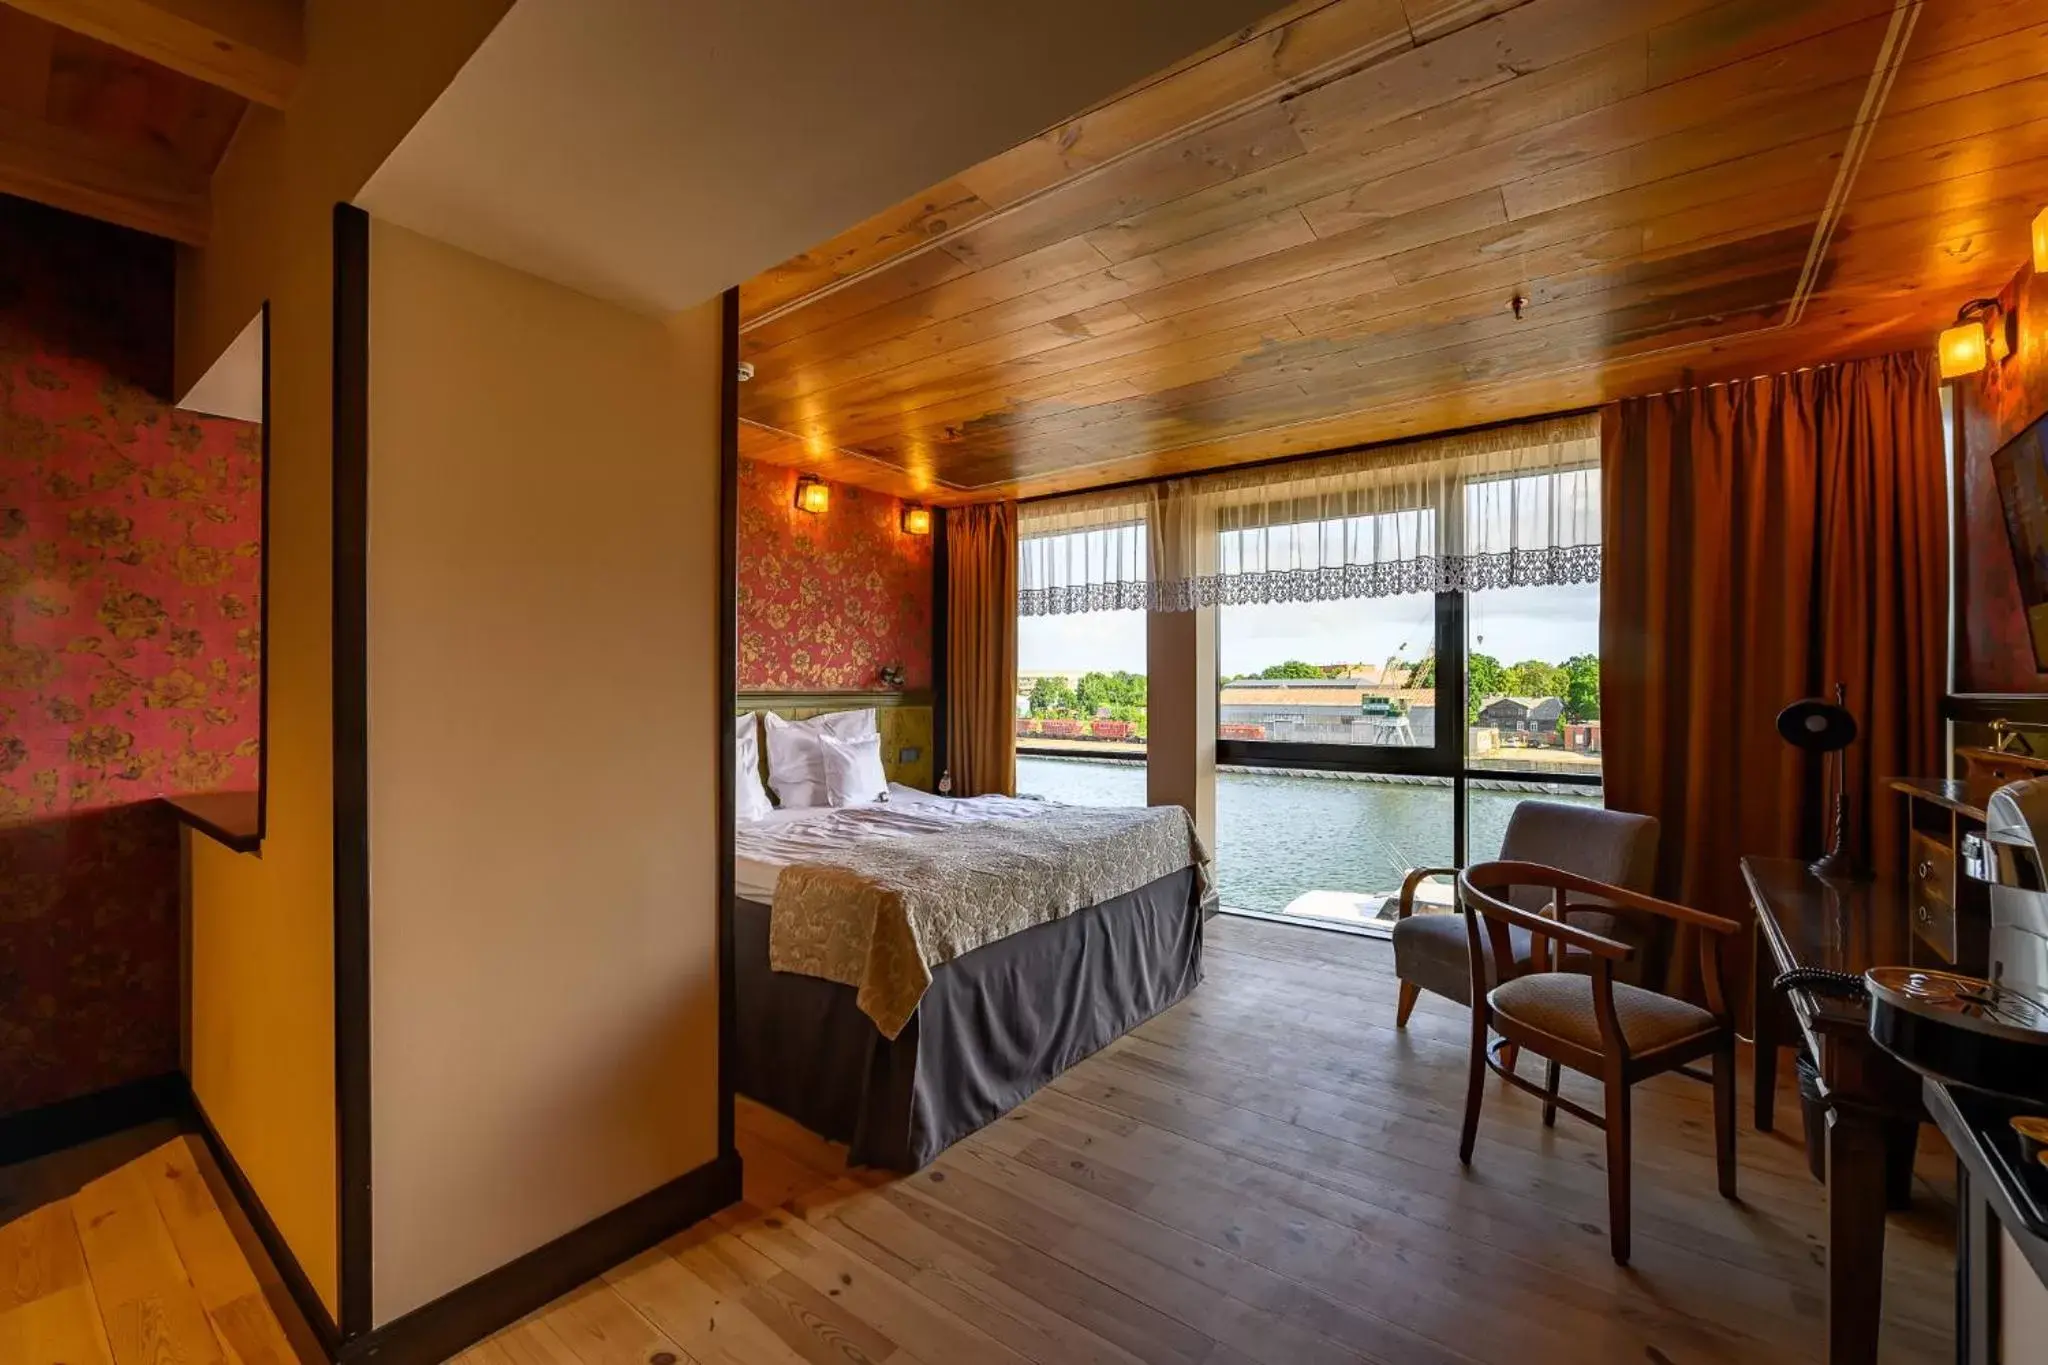 Bedroom in Promenade Hotel Liepaja